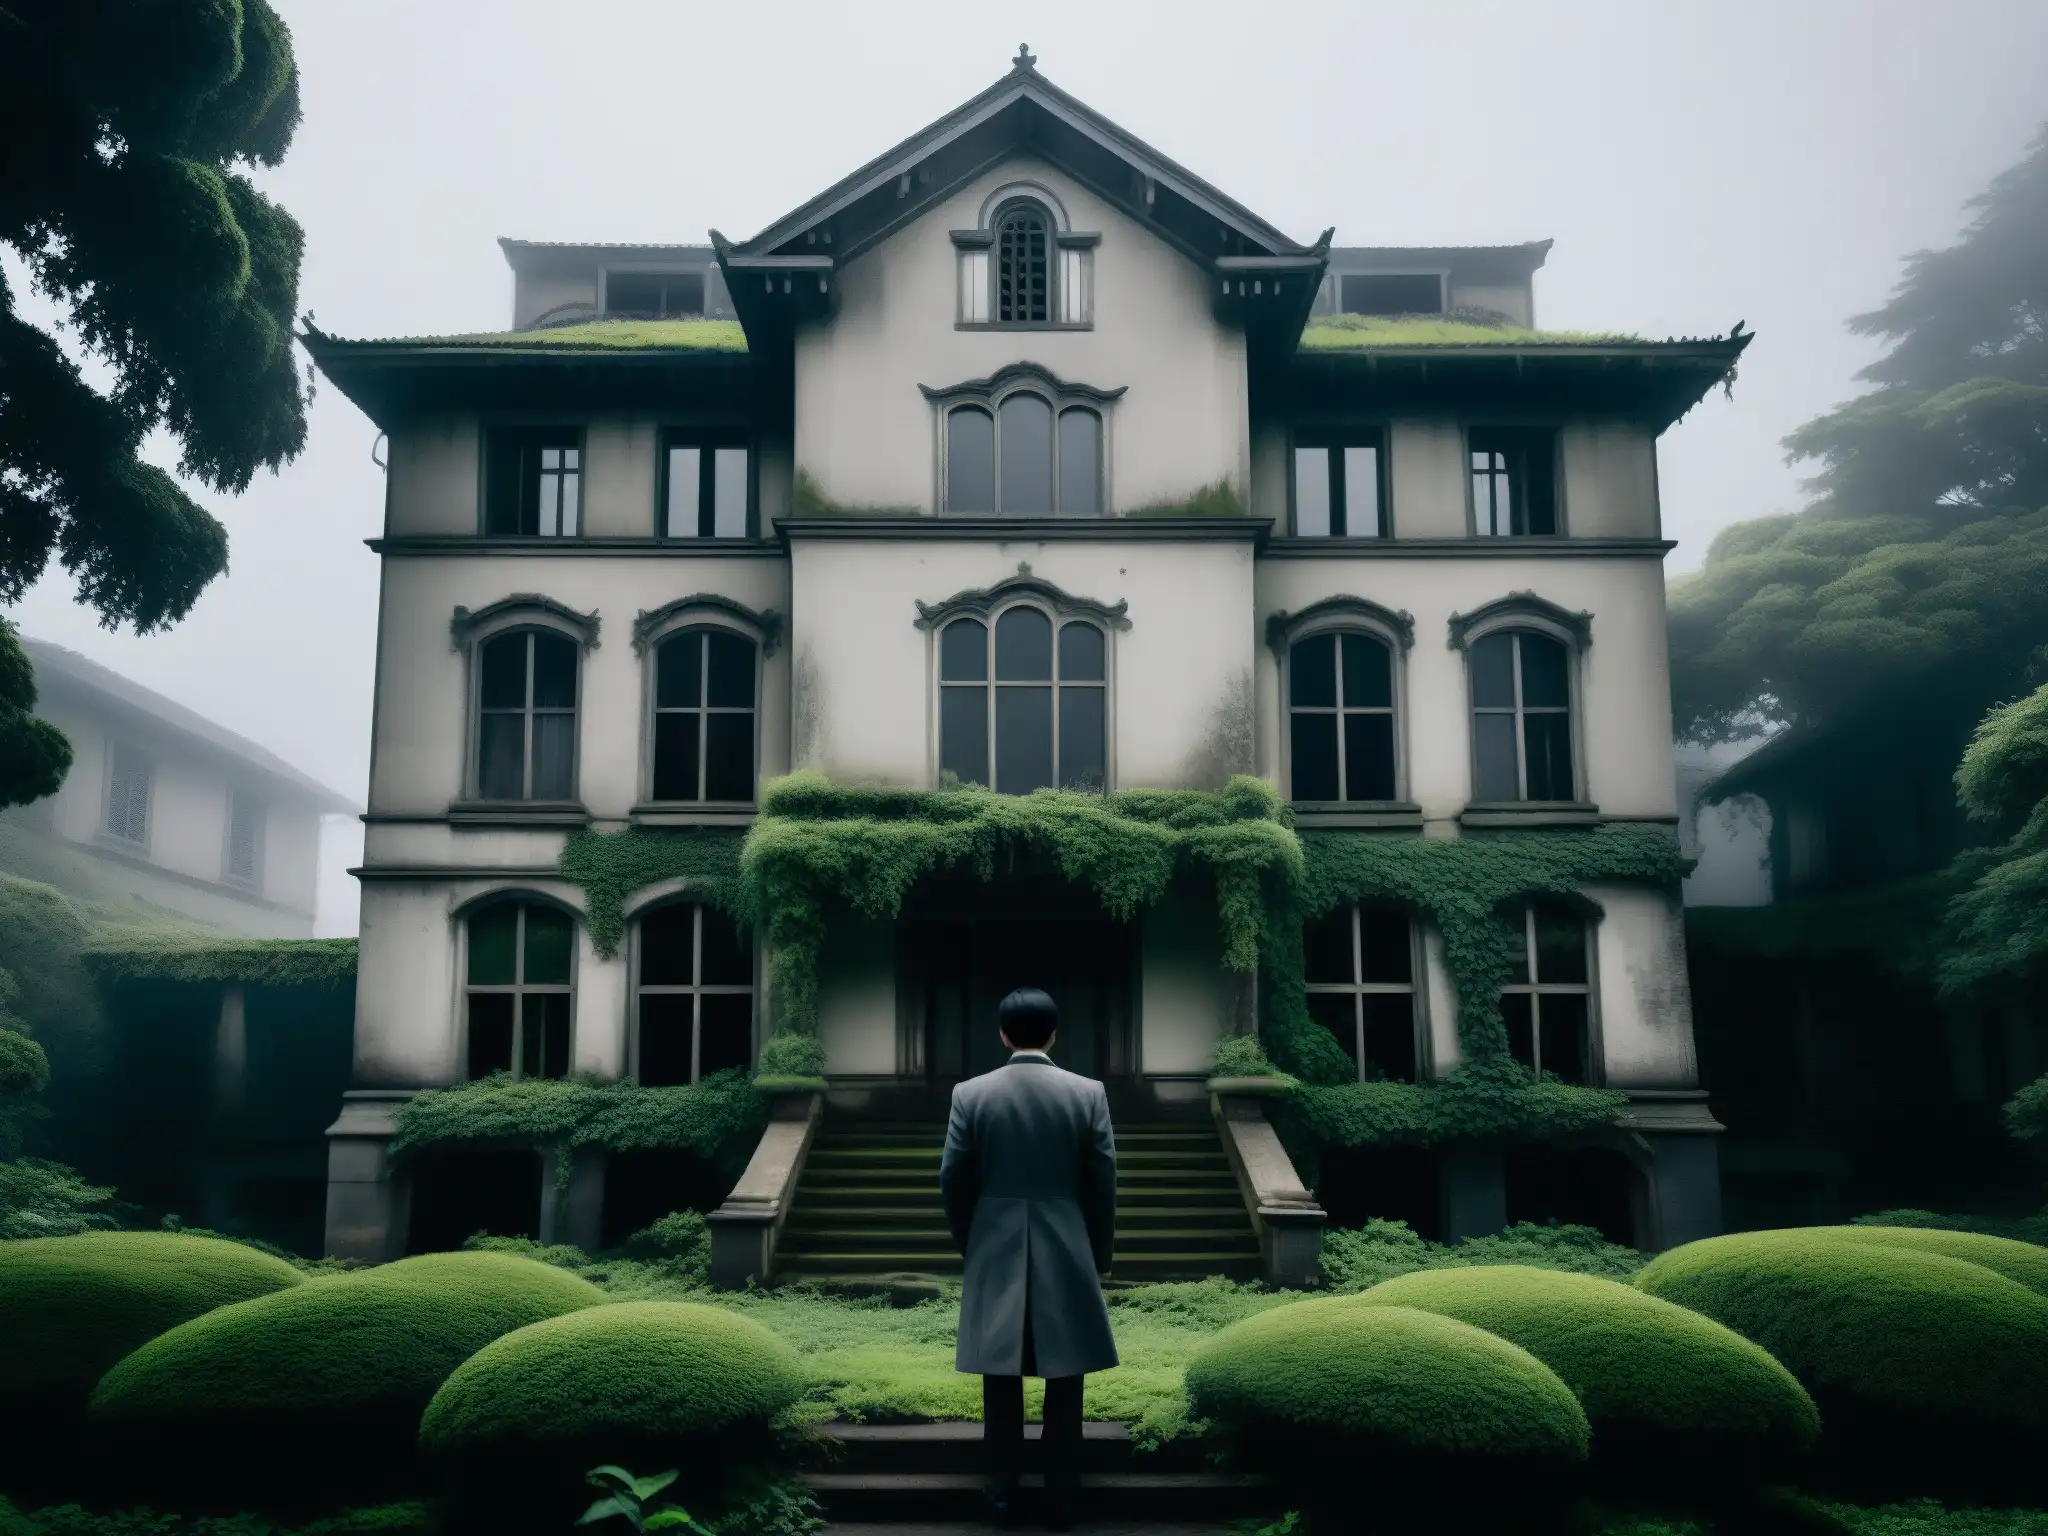 La Casa Maldita de Himuro, mansión abandonada envuelta en niebla con jardín descuidado y figura fantasmal en la ventana